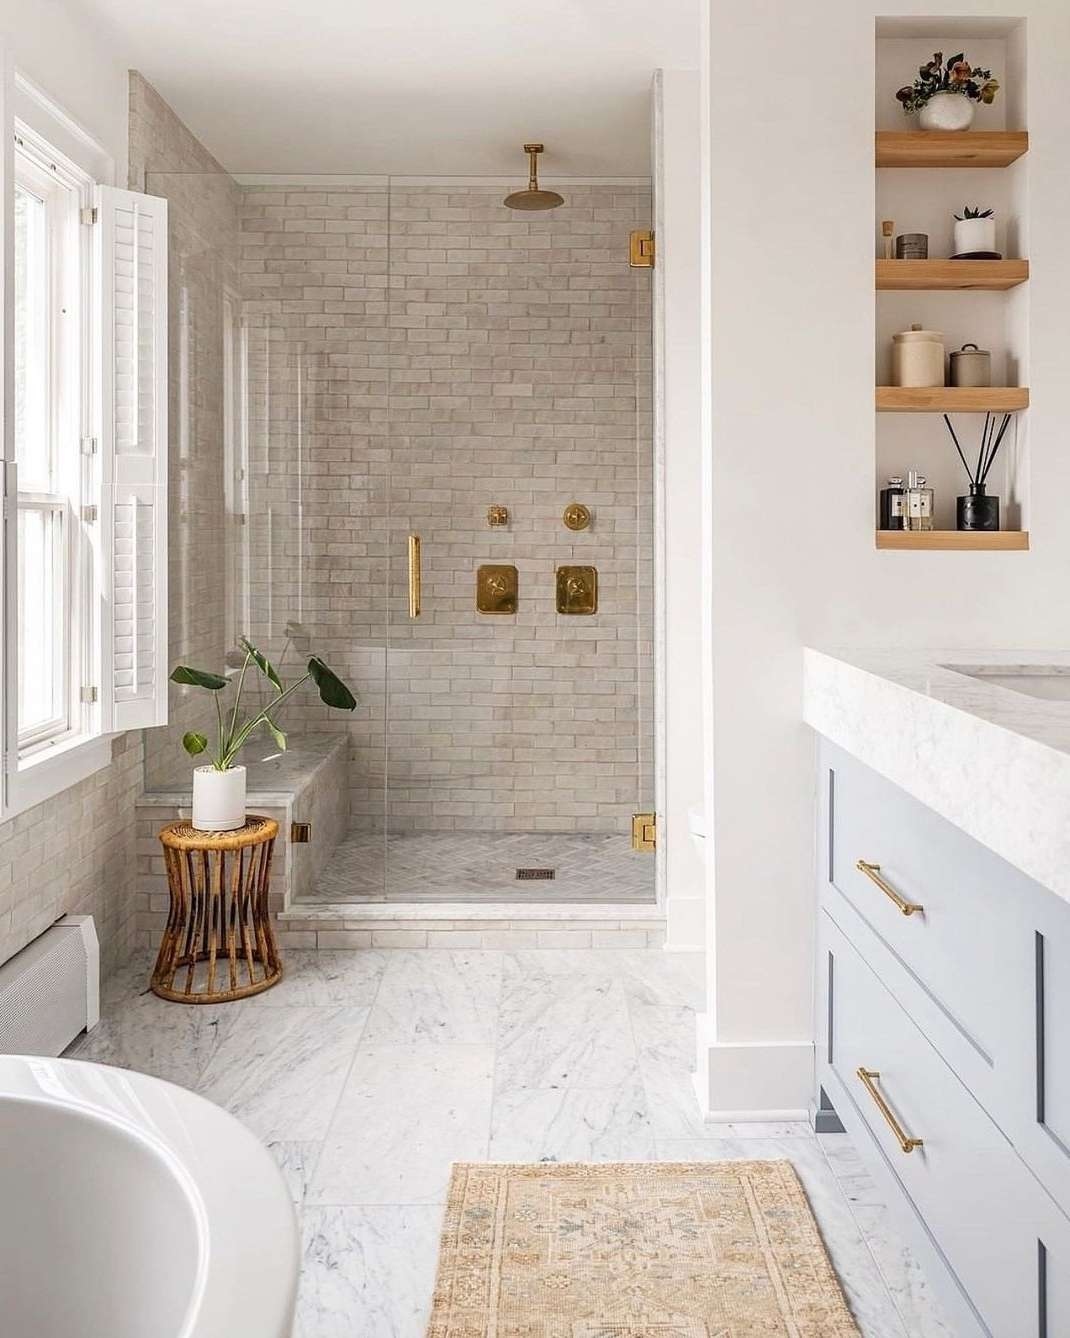 Minimalistisches Badezimmer mit Naturholz, goldenen Armaturen, beigen Fliesen und Marmorfußboden